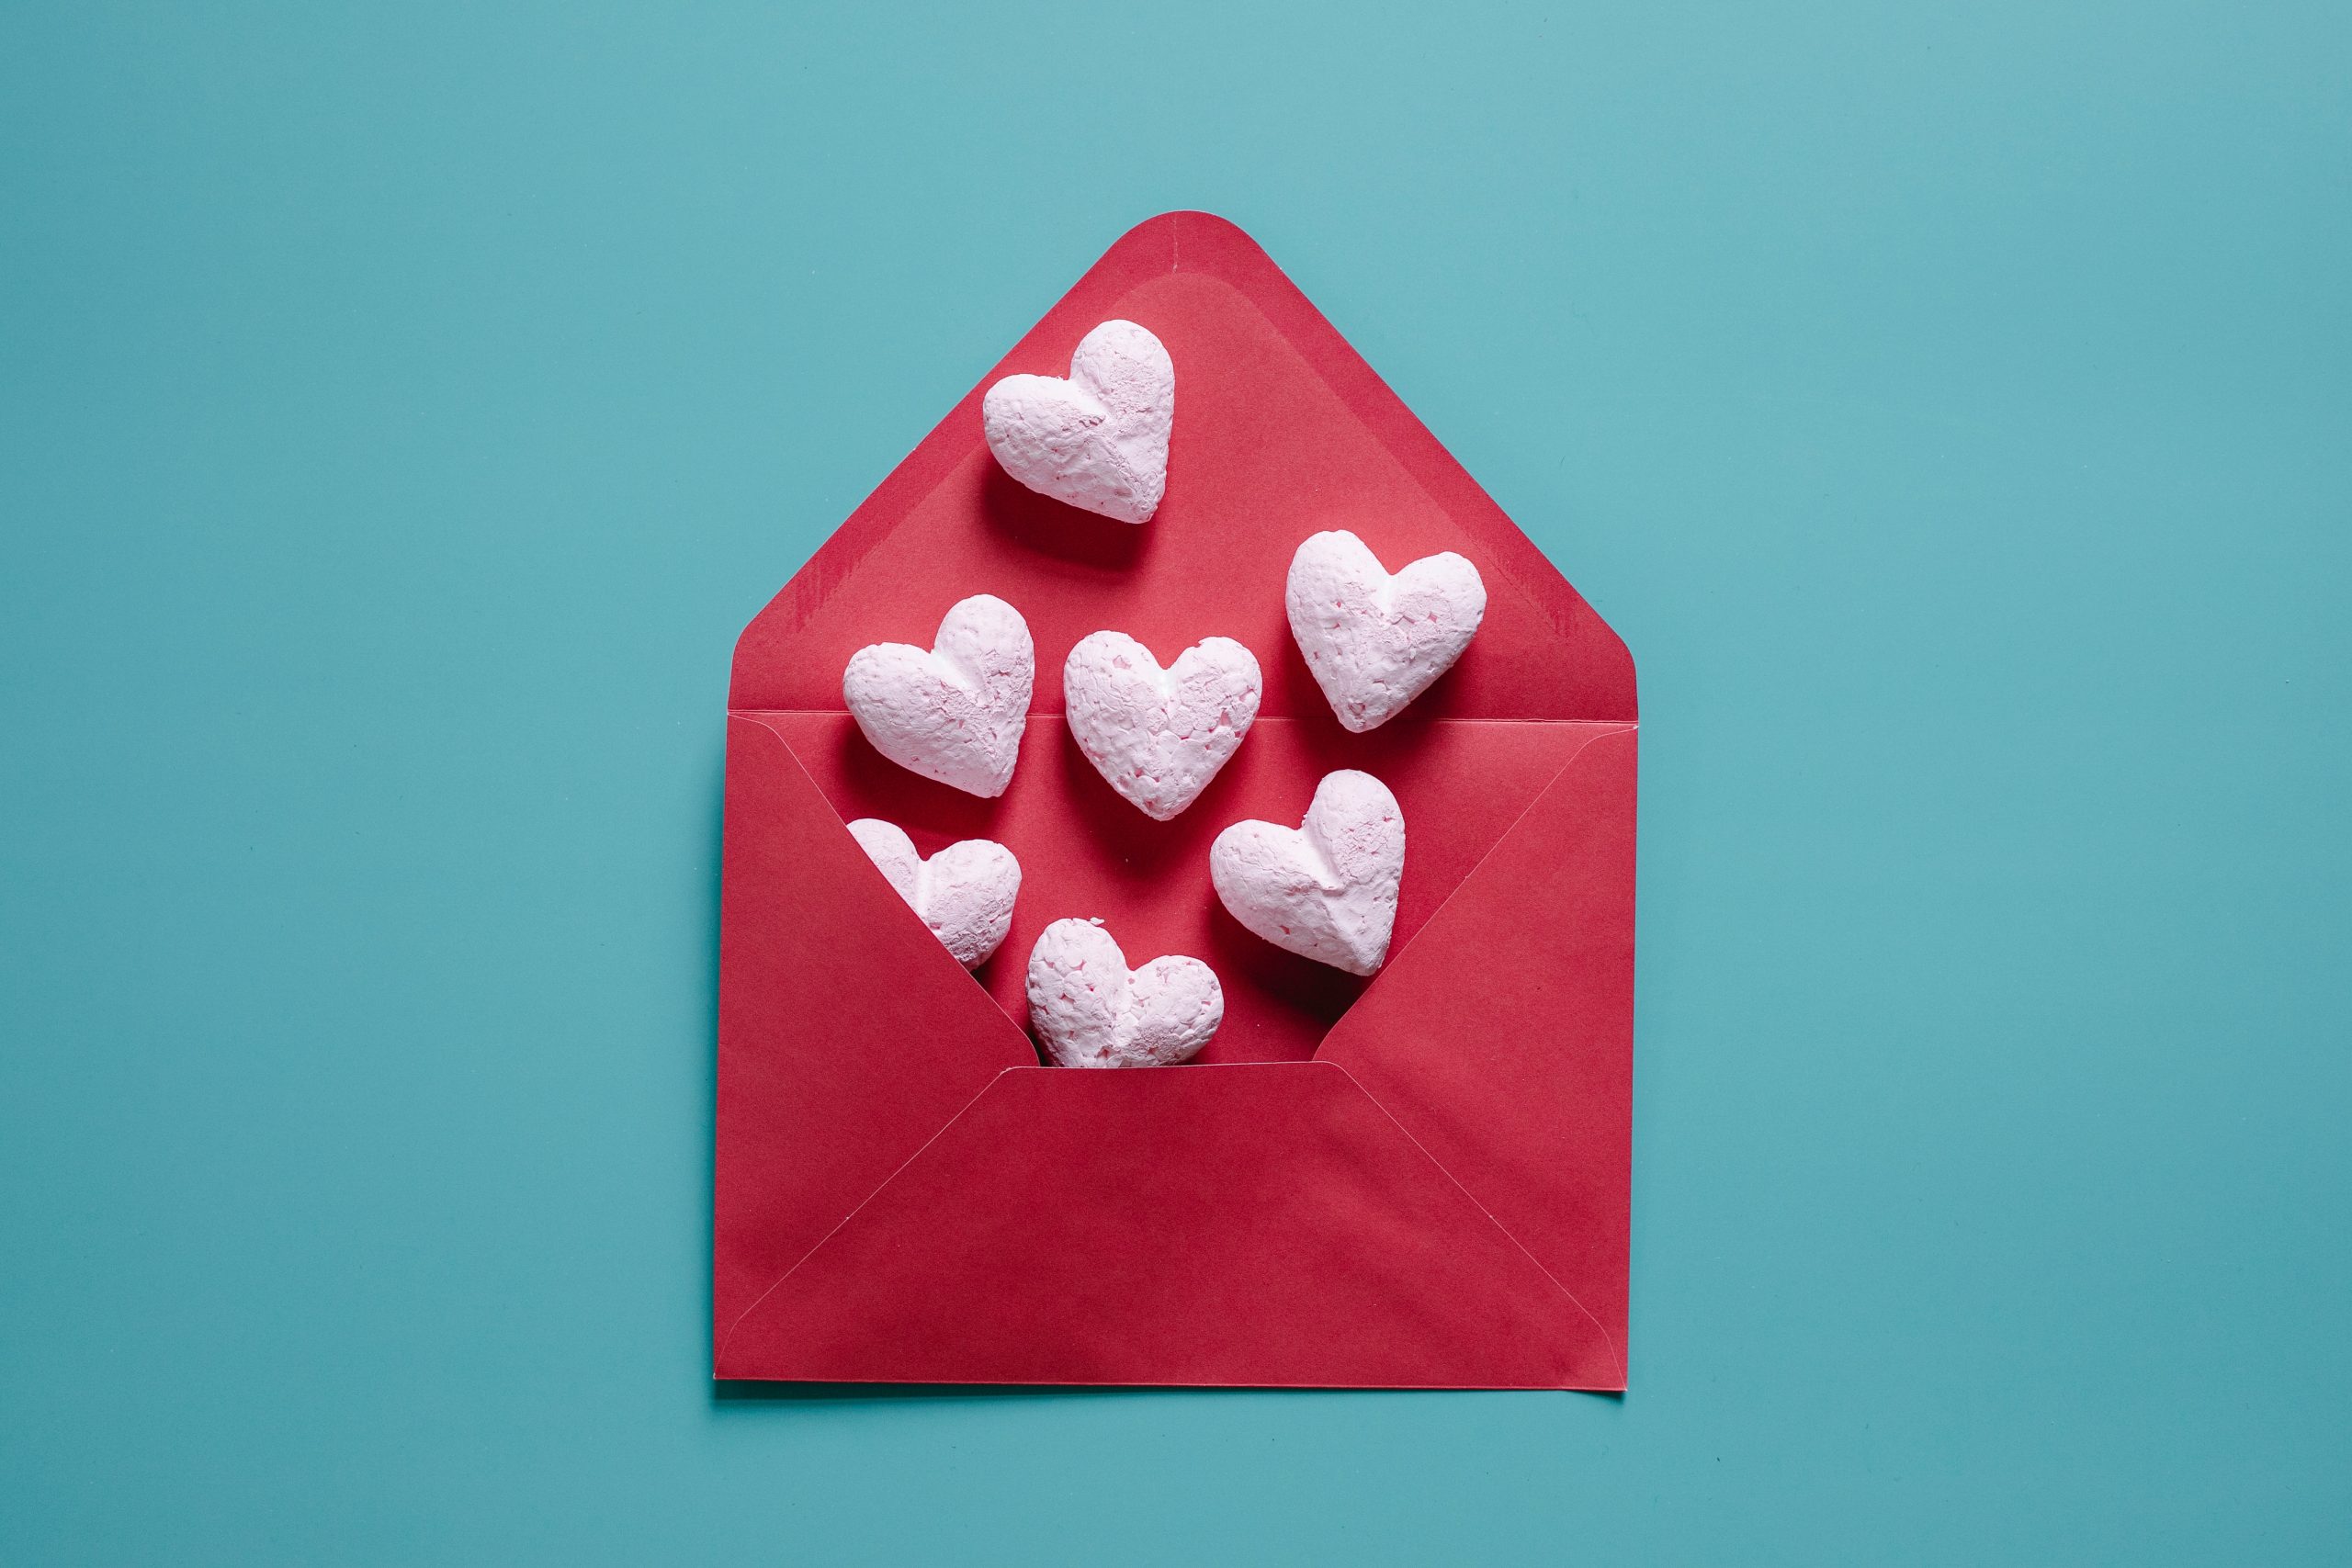 10 idées cadeaux québécois à offrir pour la St-Valentin – Shop moi ça